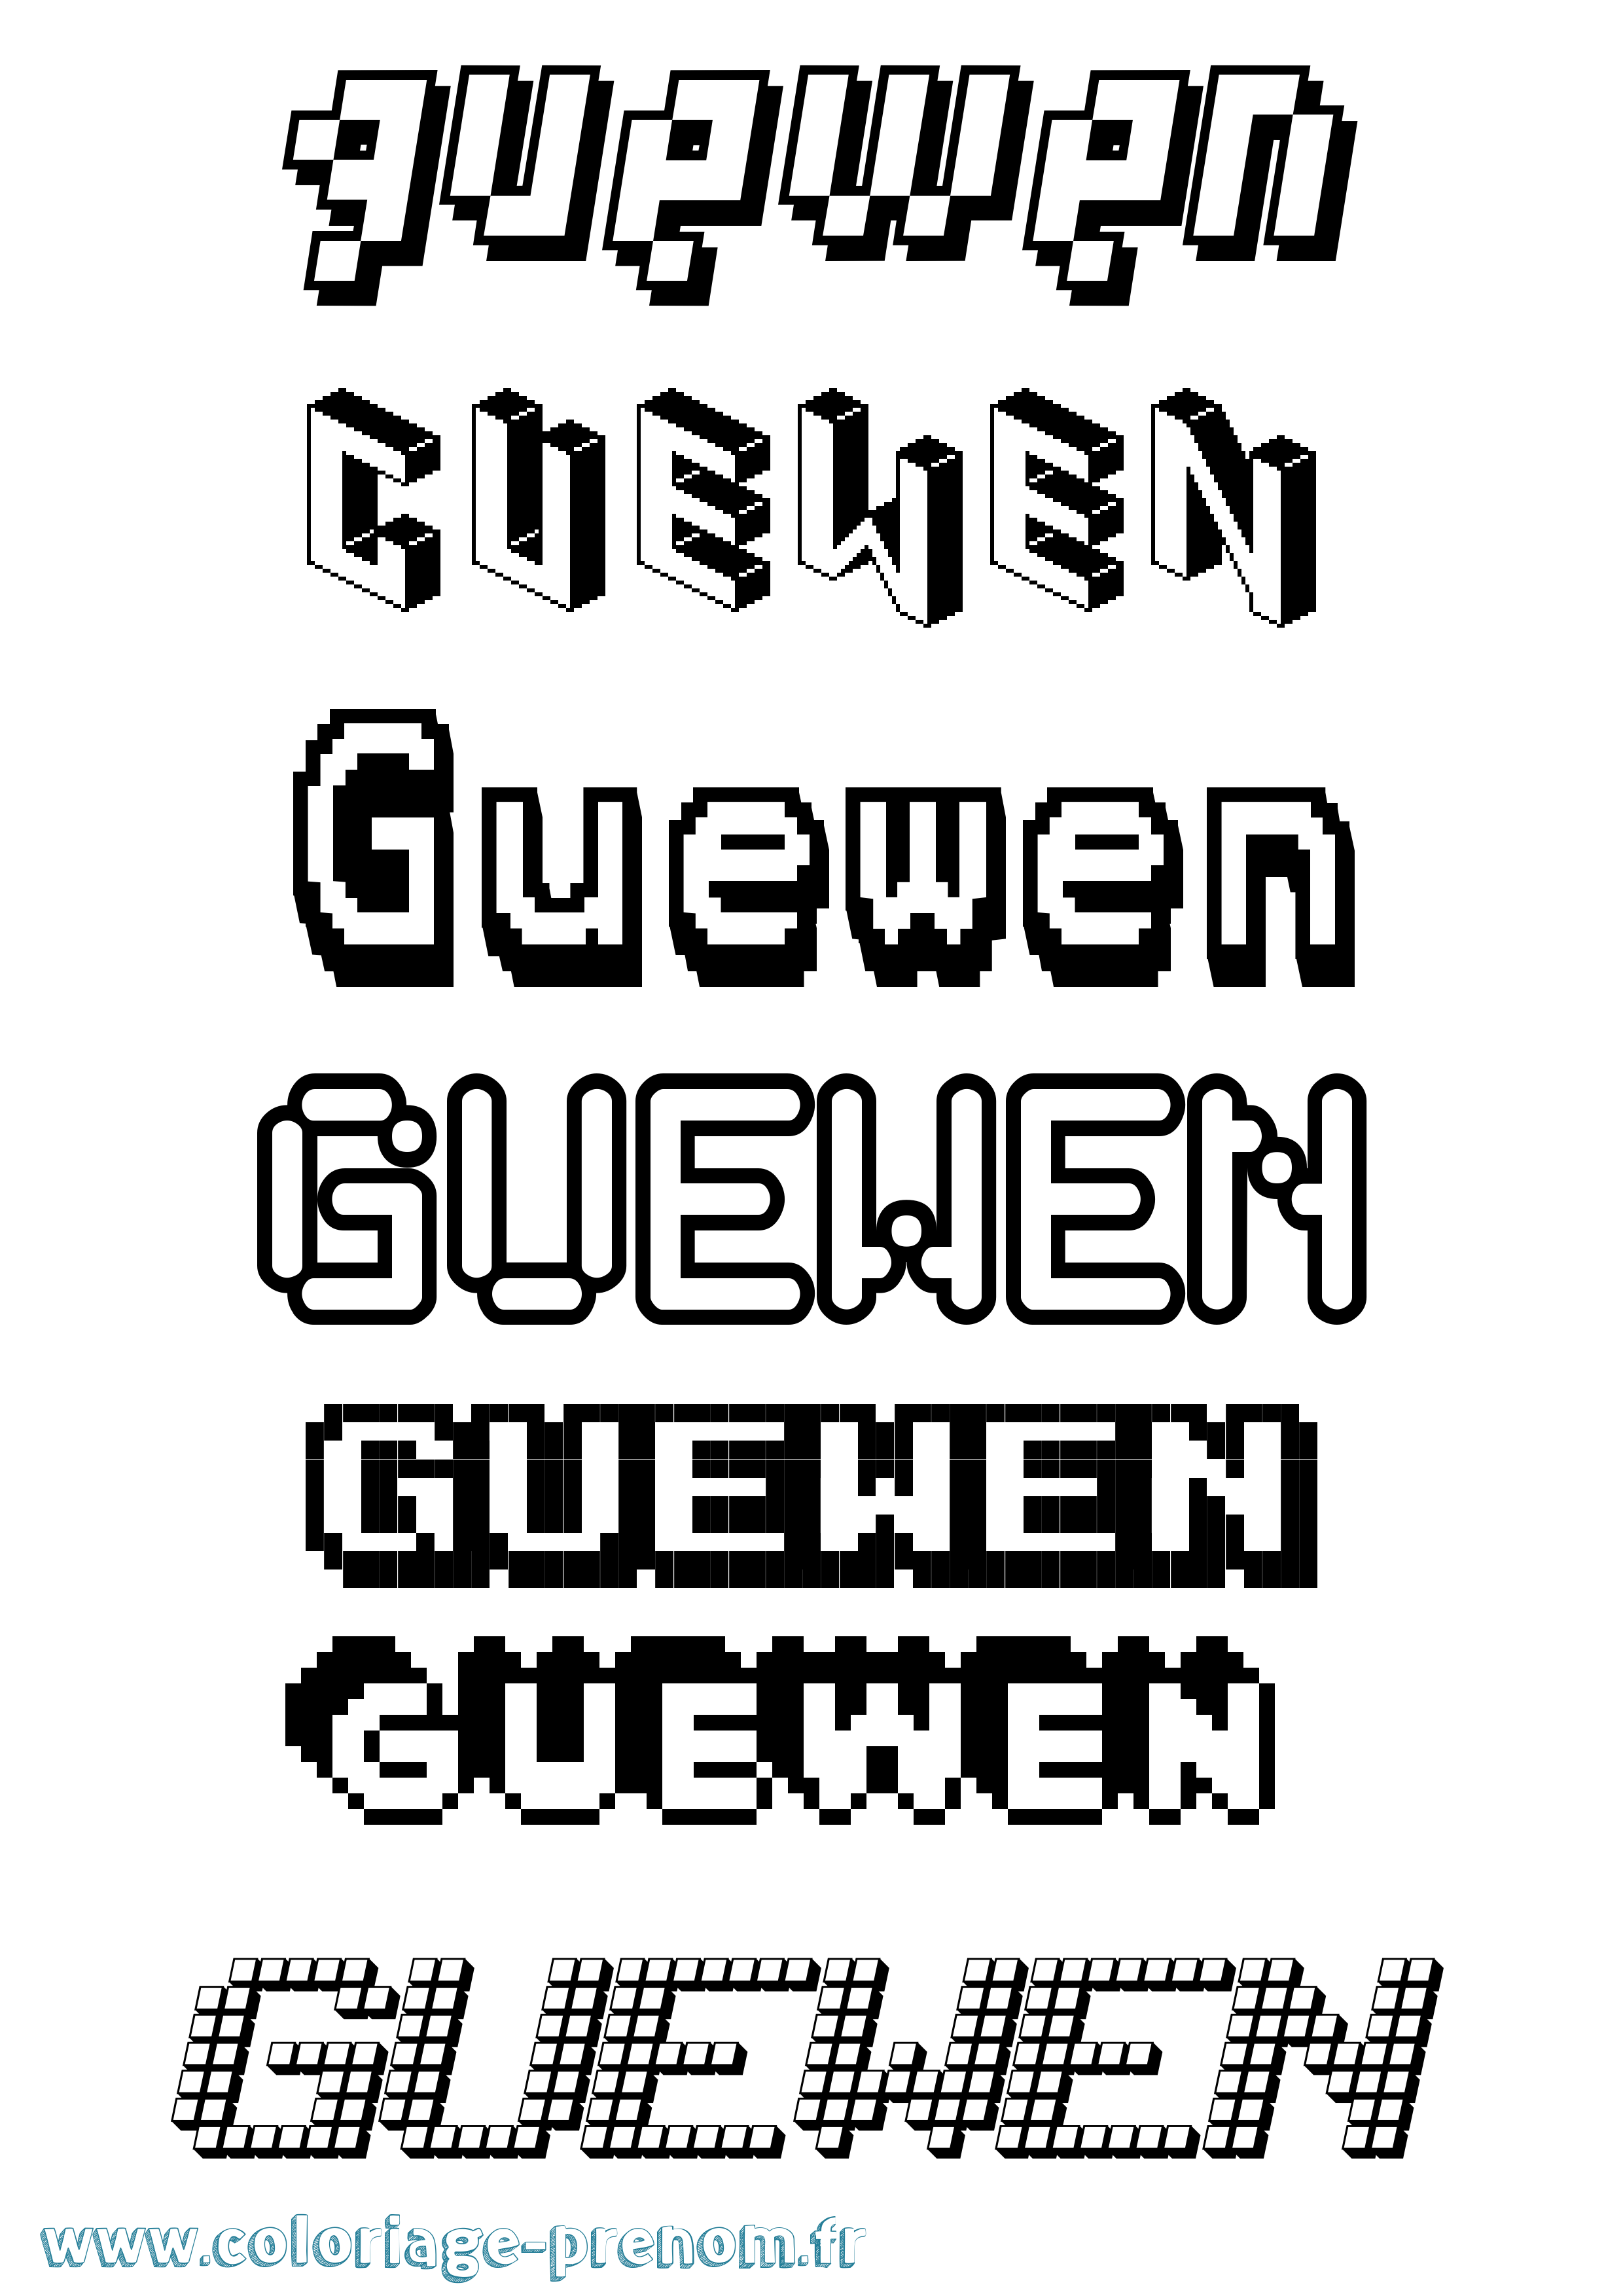 Coloriage prénom Guewen Pixel